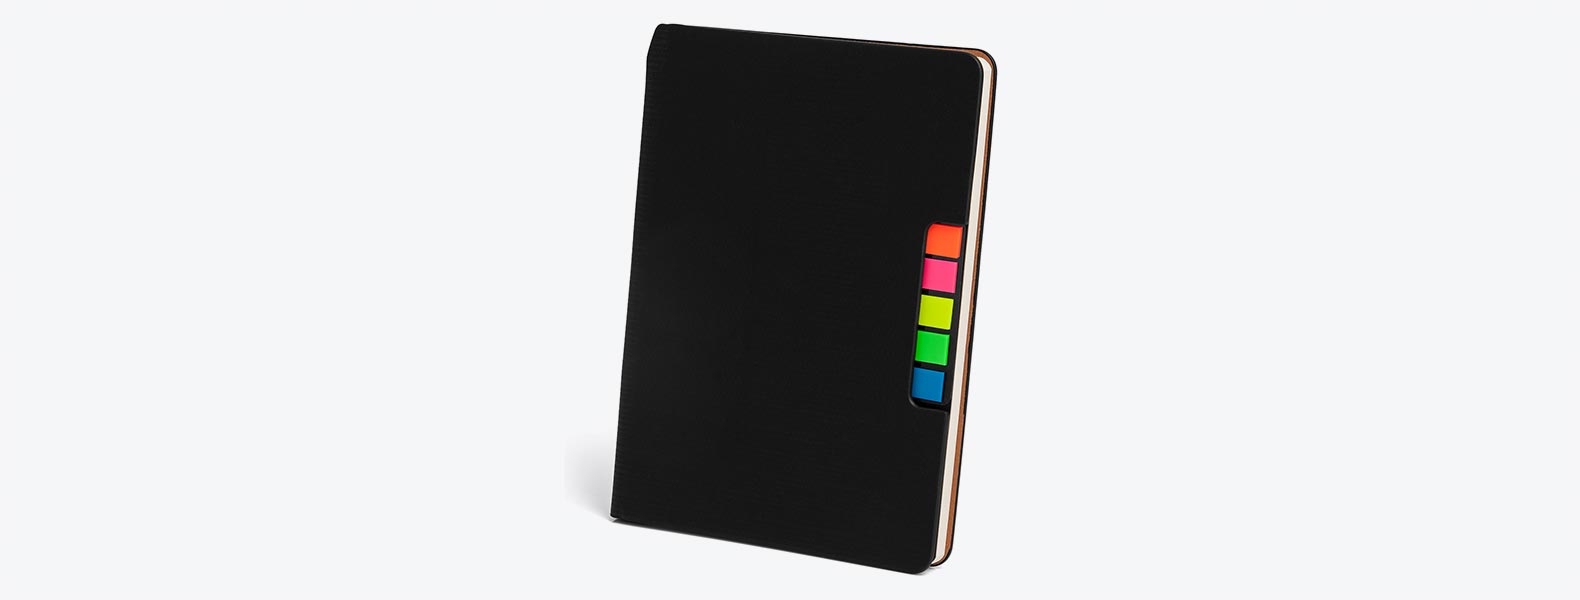 Caderno para anotações preto com capa em Material Sintético. Conta com 80 folhas pautadas e 5 cores com 25 folhas autocolantes cada.